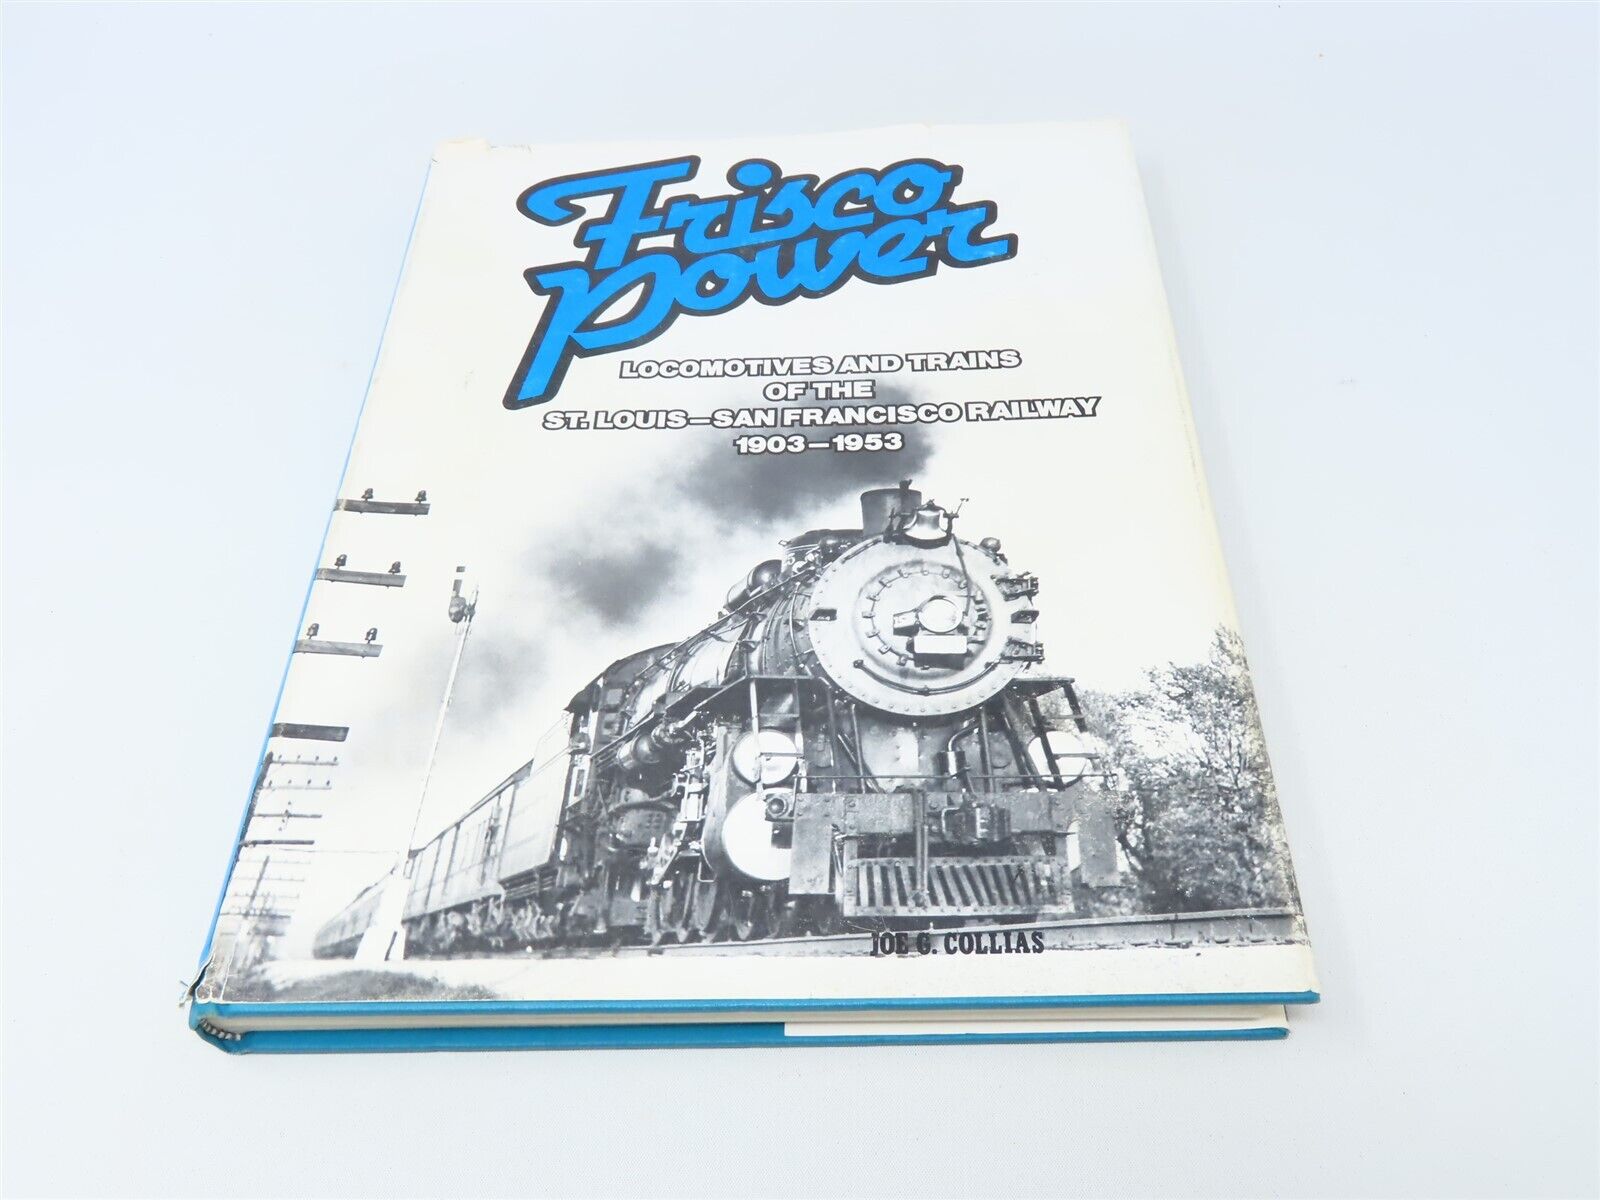 Frisco Power: Locomotives & Trains ... by Joe G Collias ©1984 HC Book